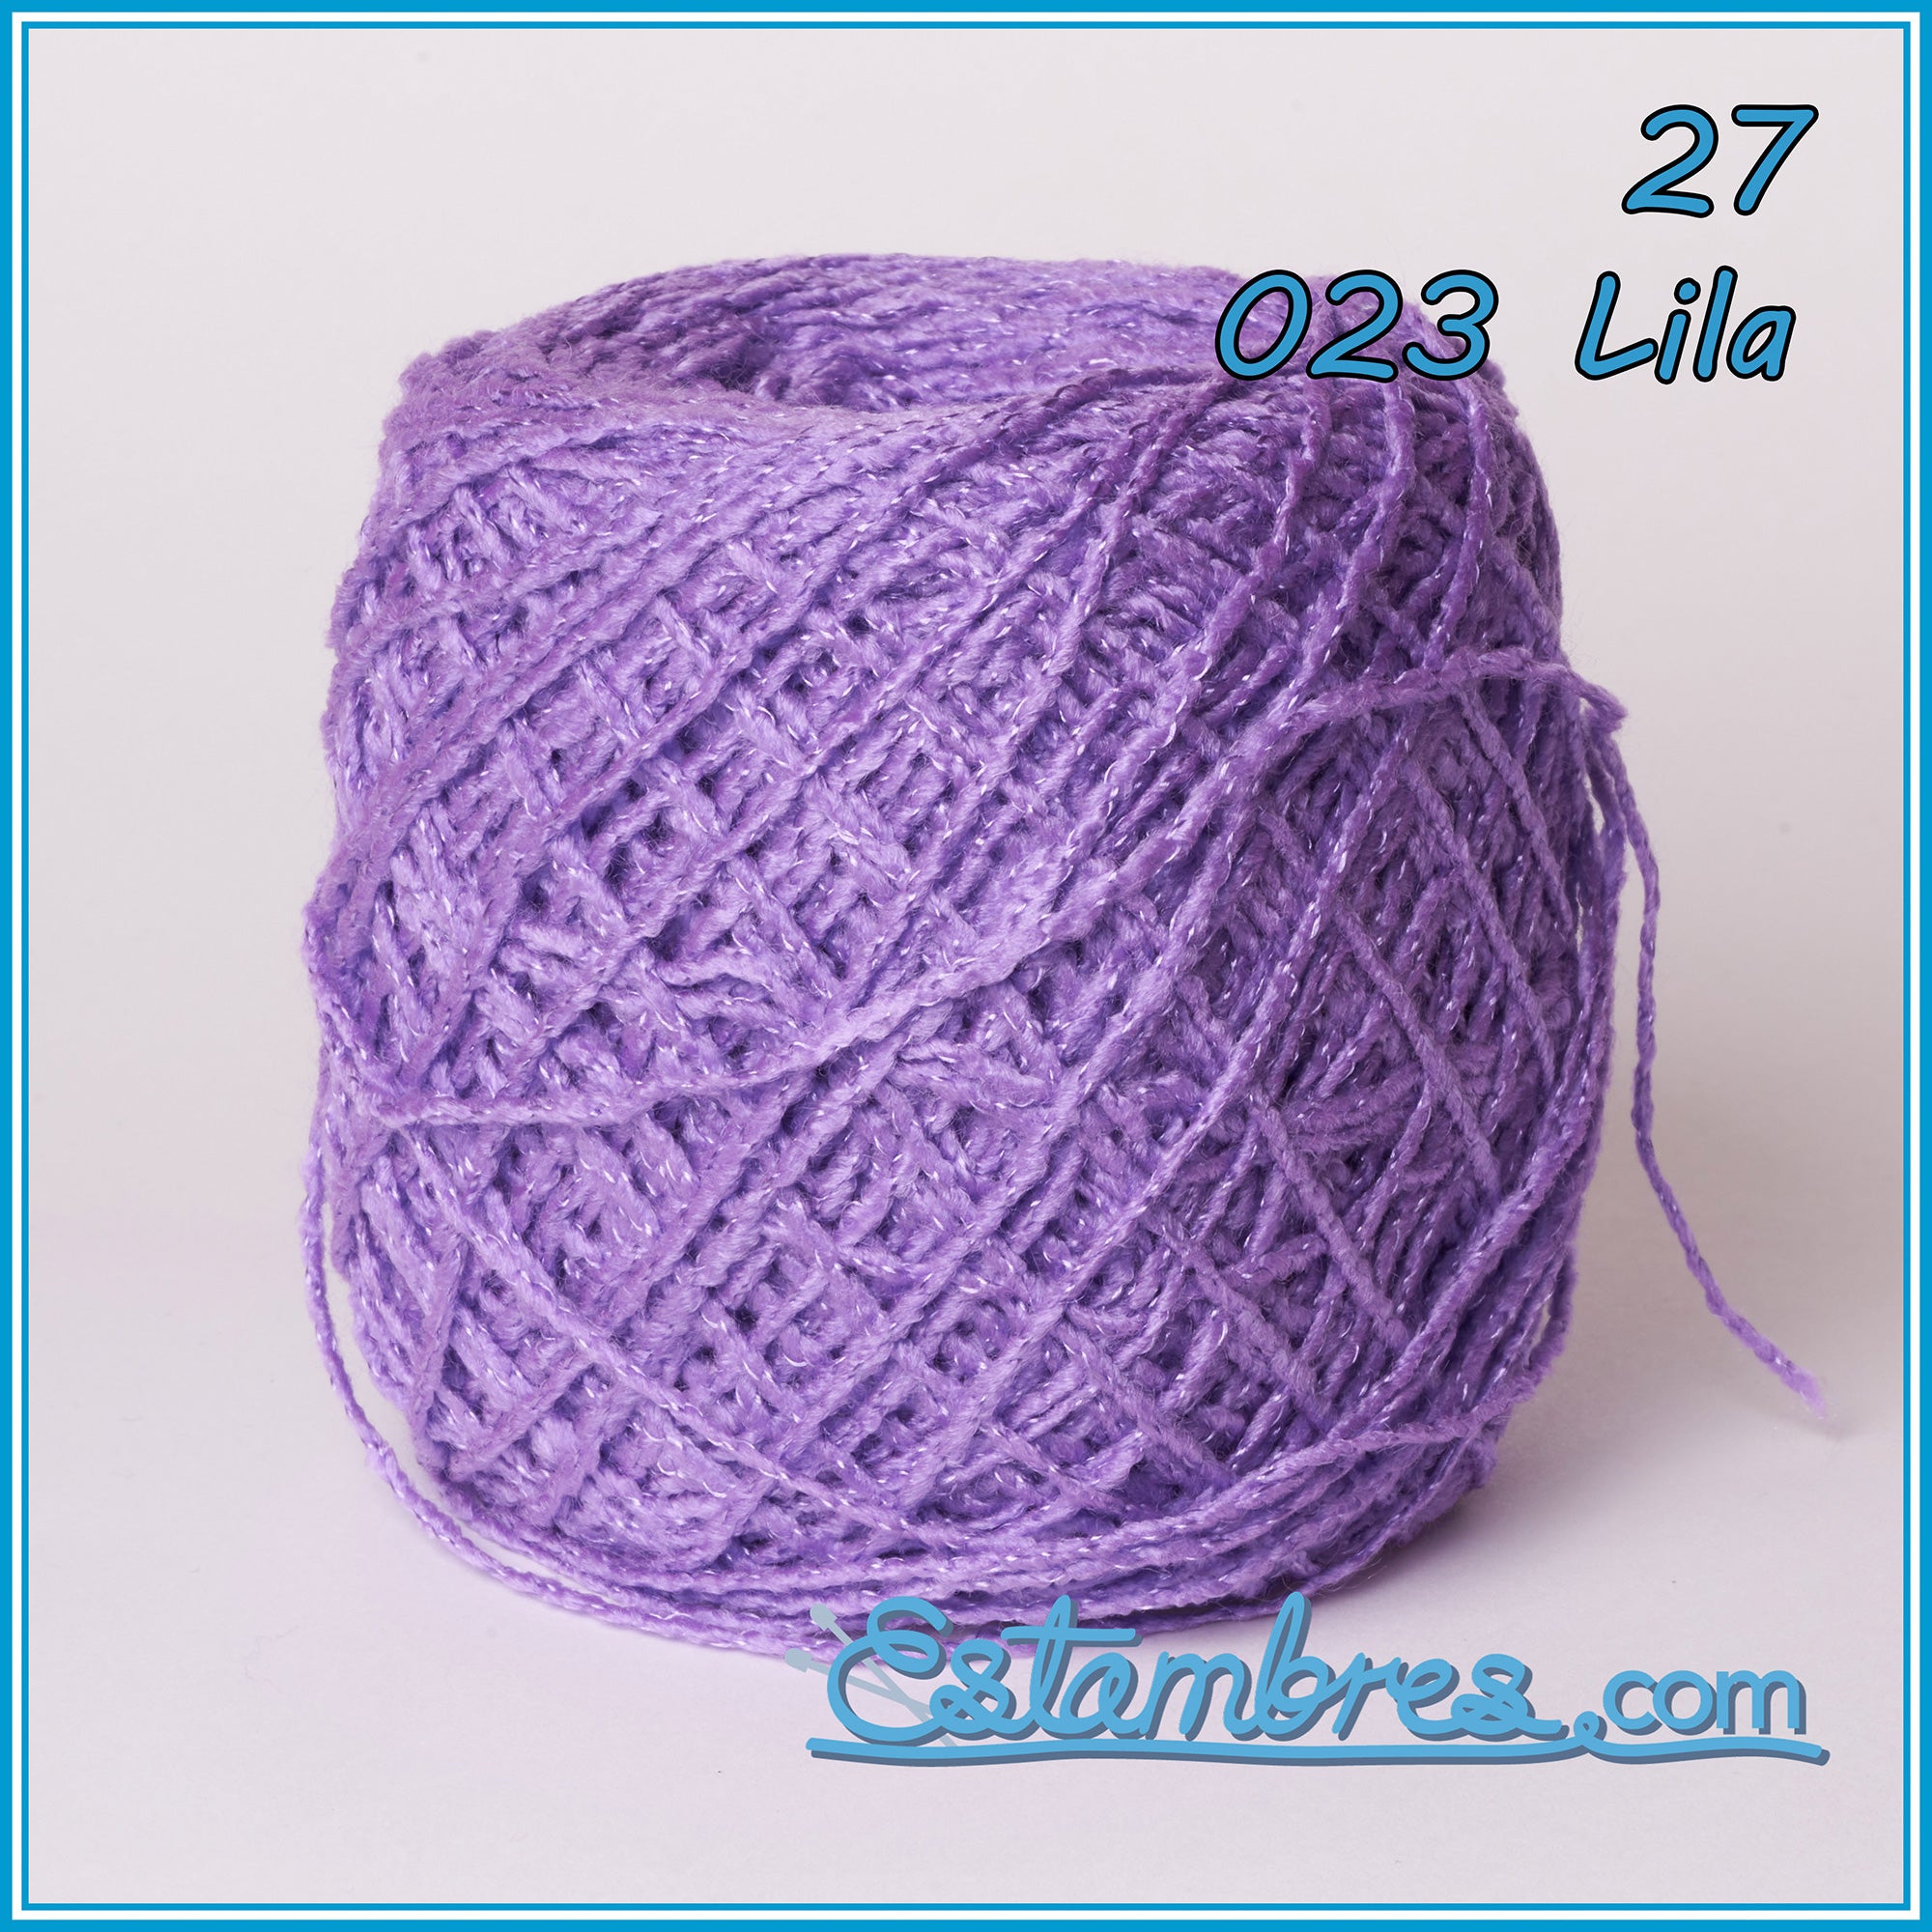 Green 100g Brisa Crochet Mexican Yarn Thread - Hilo Estambre Brisa Tejer  #311-B